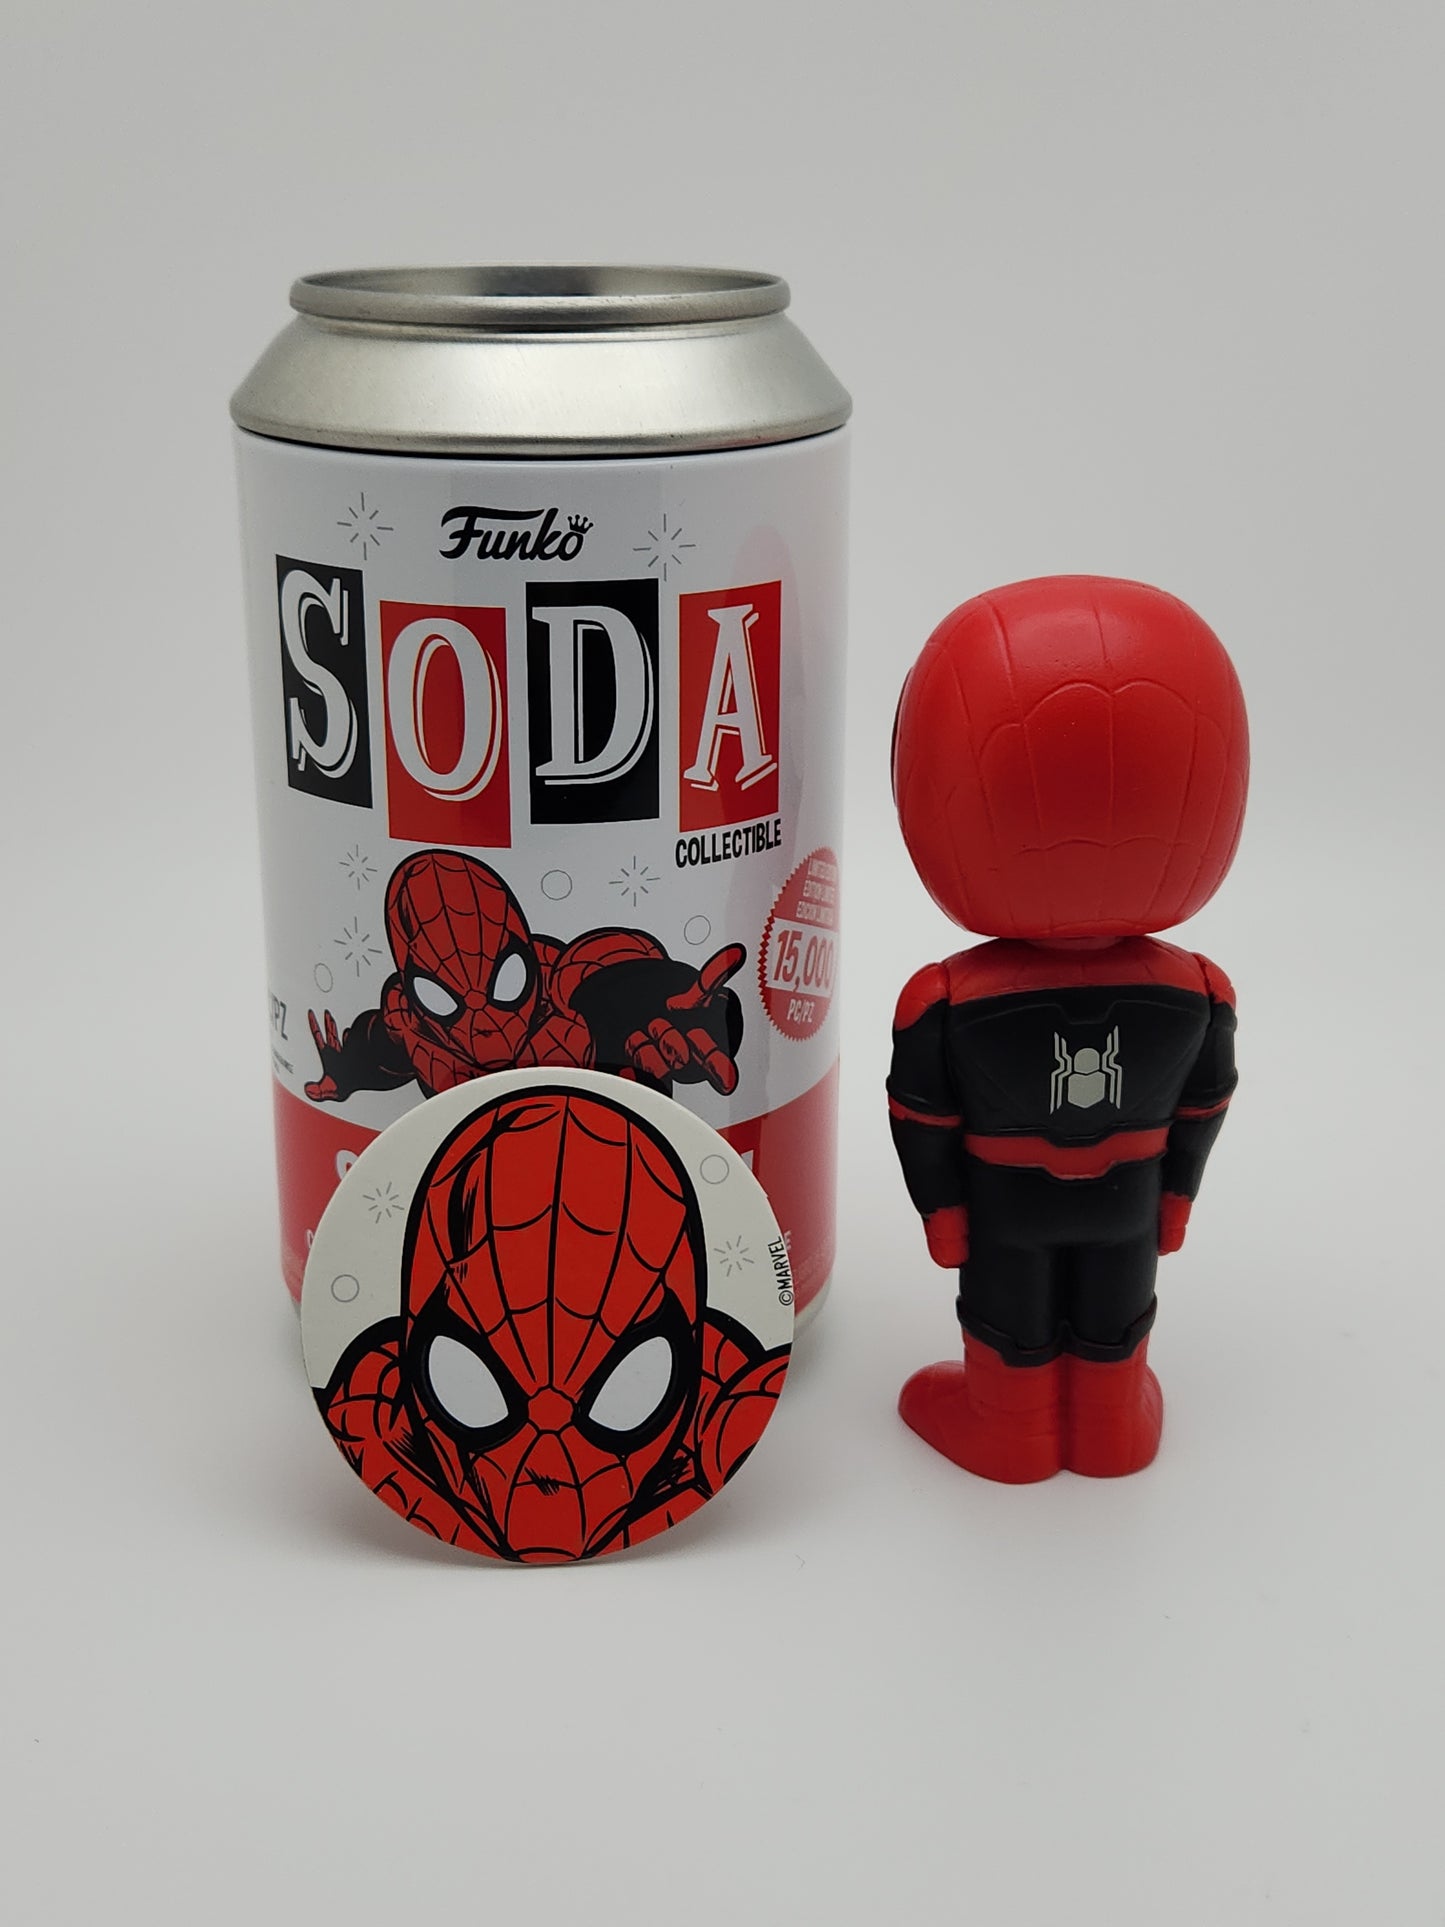 Funko Soda- Spider-man